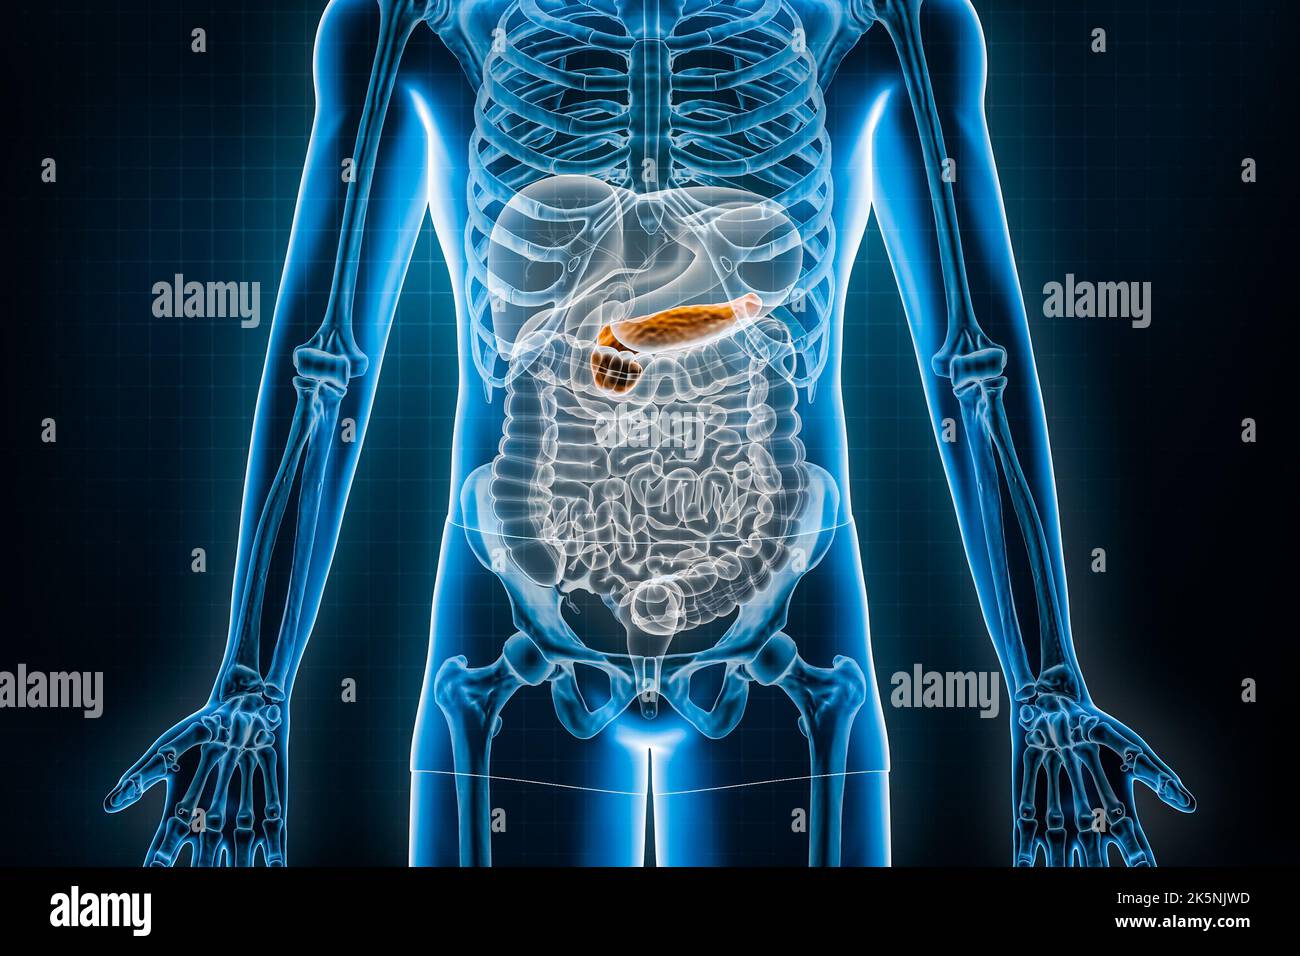 Pankreas 3D Rendering-Abbildung. Anteriore oder vordere Ansicht des menschlichen Verdauungssystems oder des Darments. Anatomie, Medizin, Biologie, Wissenschaft, Gesundheitswesen, pa Stockfoto